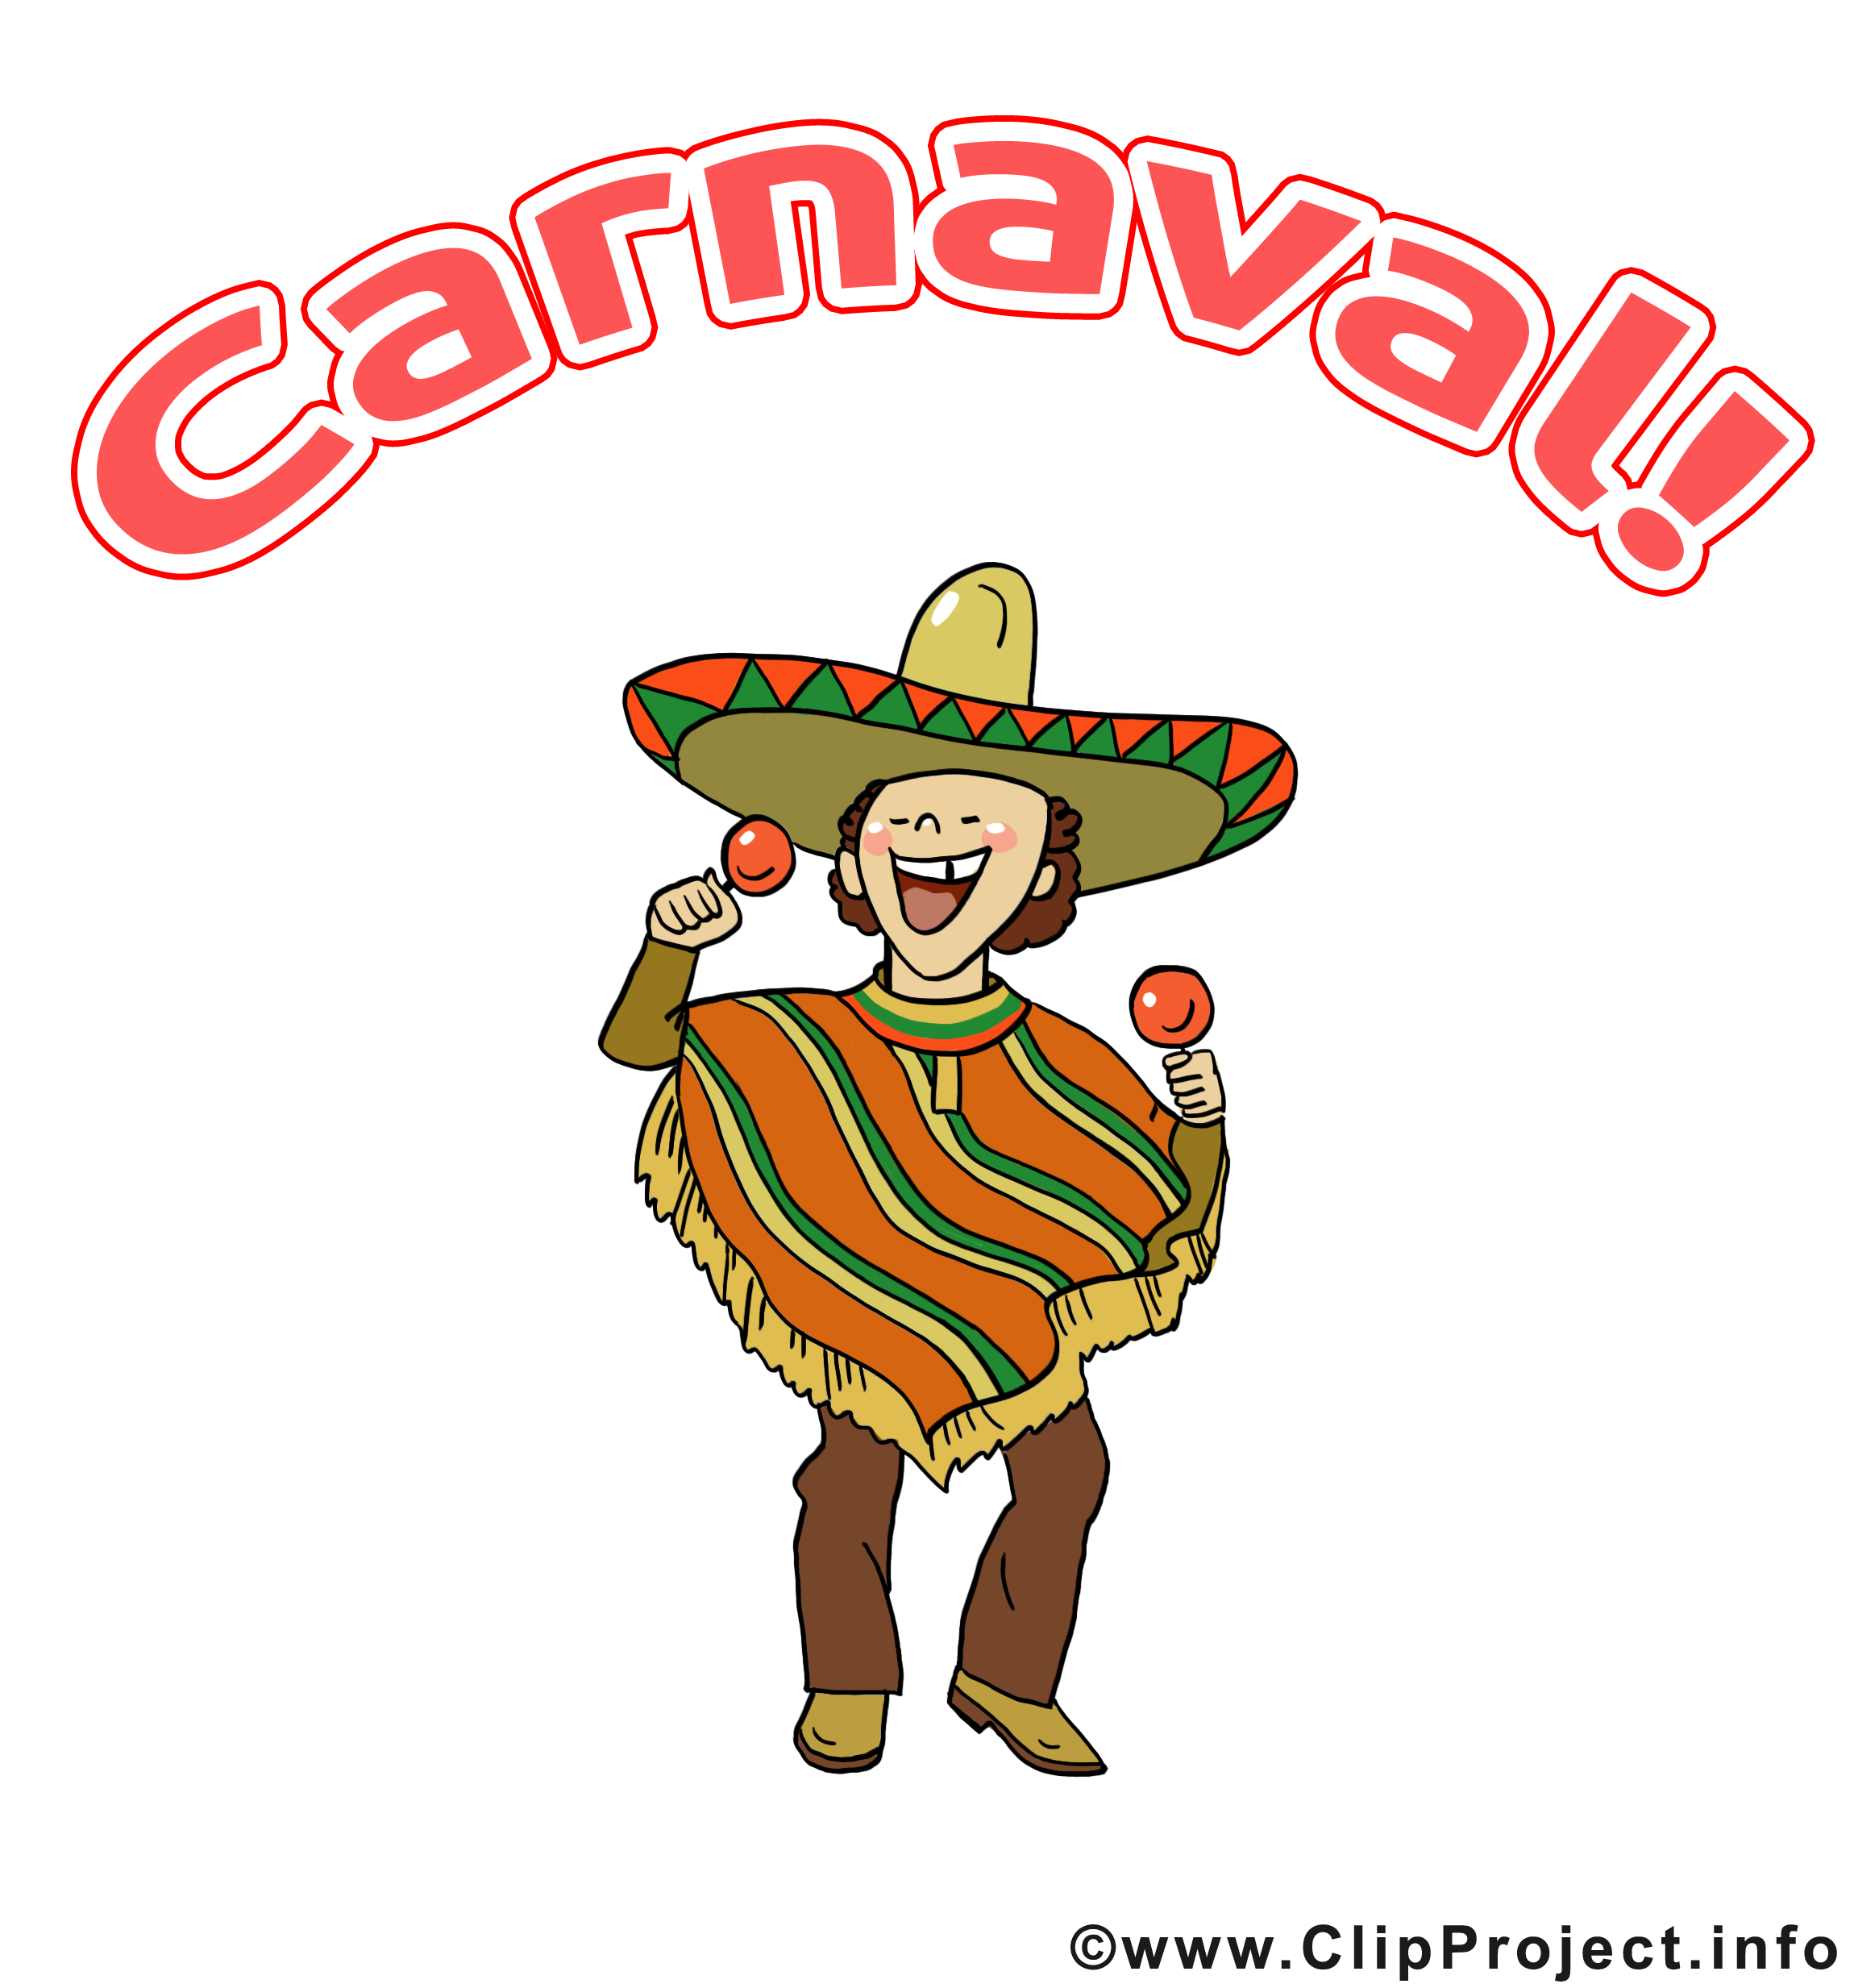 Mexicain images gratuites – Carnaval clipart